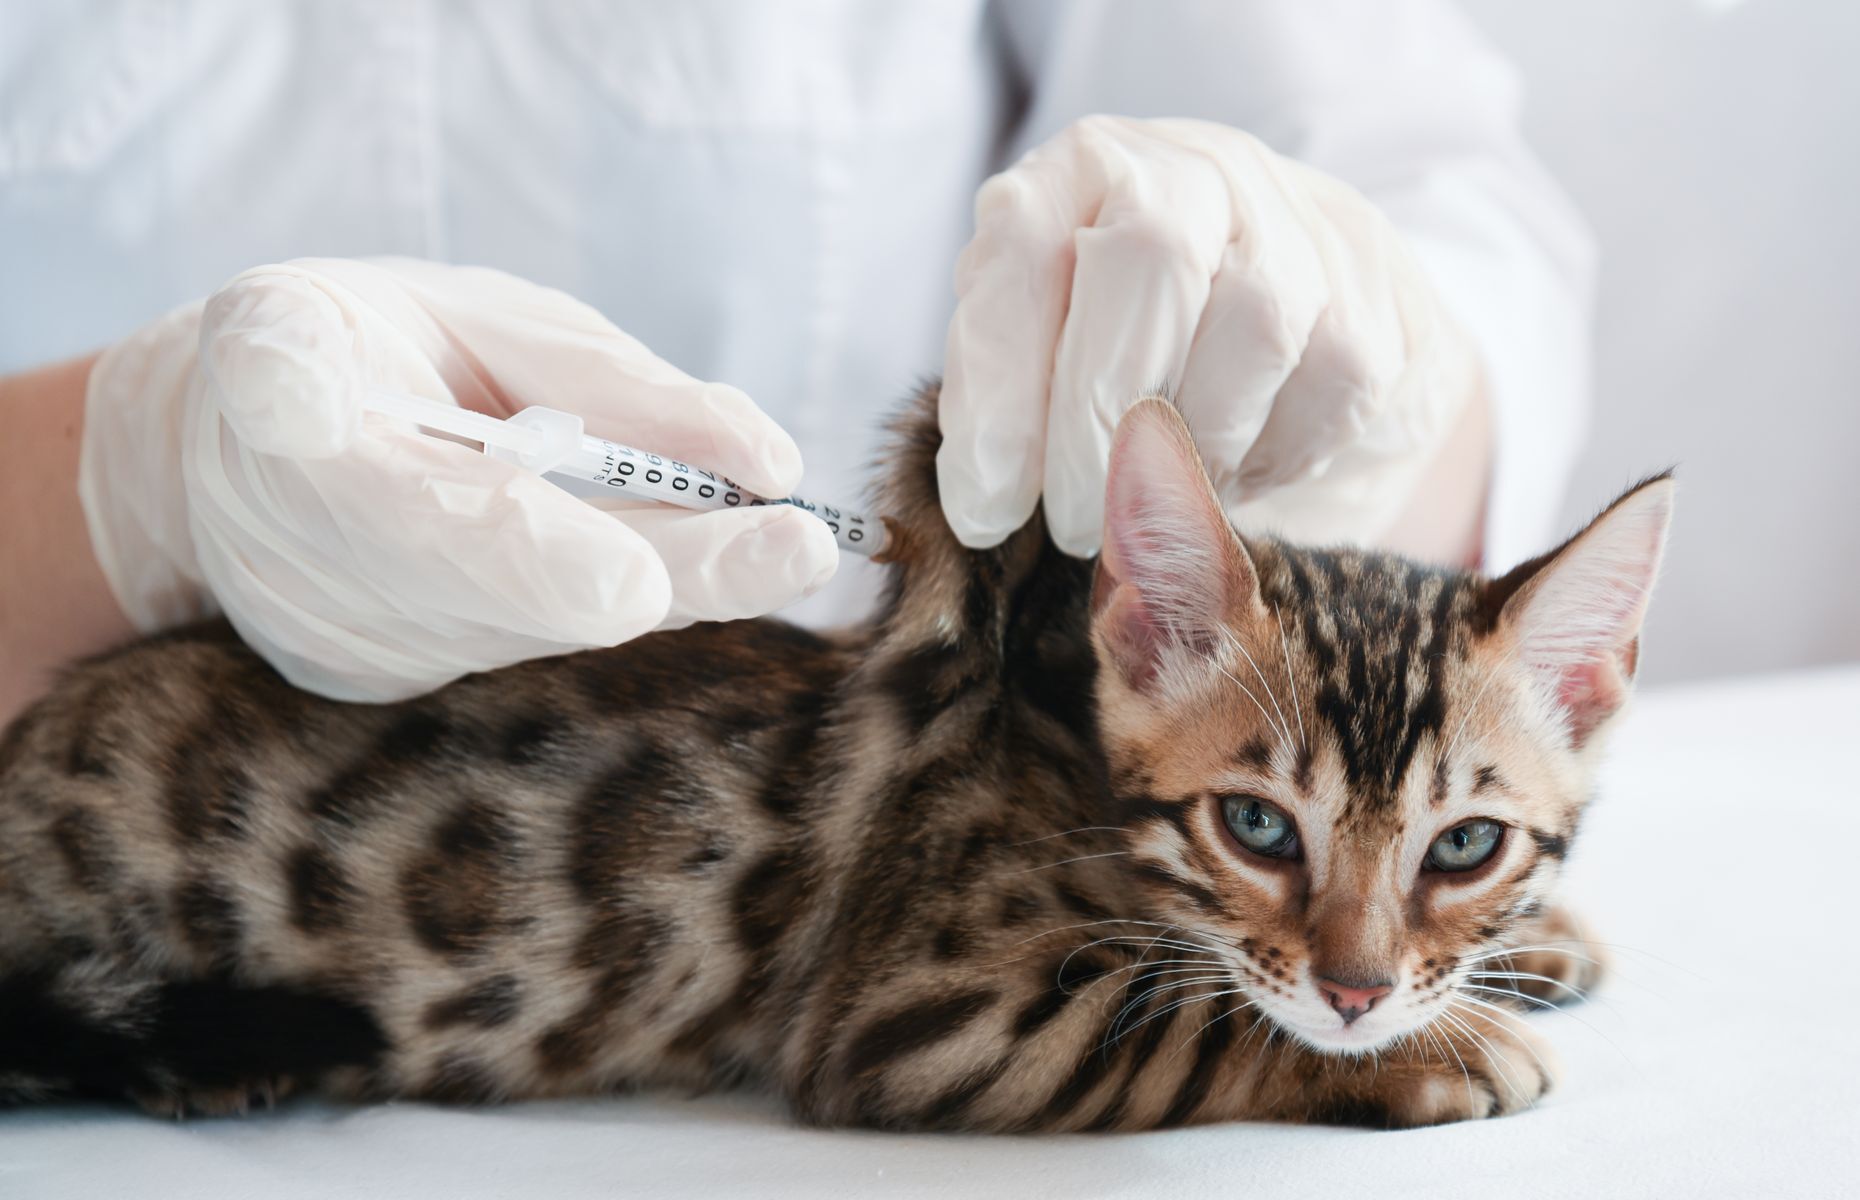 <p>Si vous vous dites que votre chat n’a pas besoin d’être vacciné puisqu’il ne sort pas dehors, vous avez malheureusement tort. Même <a href="https://www.journaldemontreal.com/2013/12/07/le-bon-vaccin-pour-votre-chat">les chats d’intérieur ont besoin d’un vaccin dit «de base»</a>, qui comprend habituellement une protection contre la panleucopénie féline et le calicivirus. Votre vétérinaire saura vous conseiller sur la meilleure protection vaccinale à prendre pour votre minou, selon ses habitudes.</p>